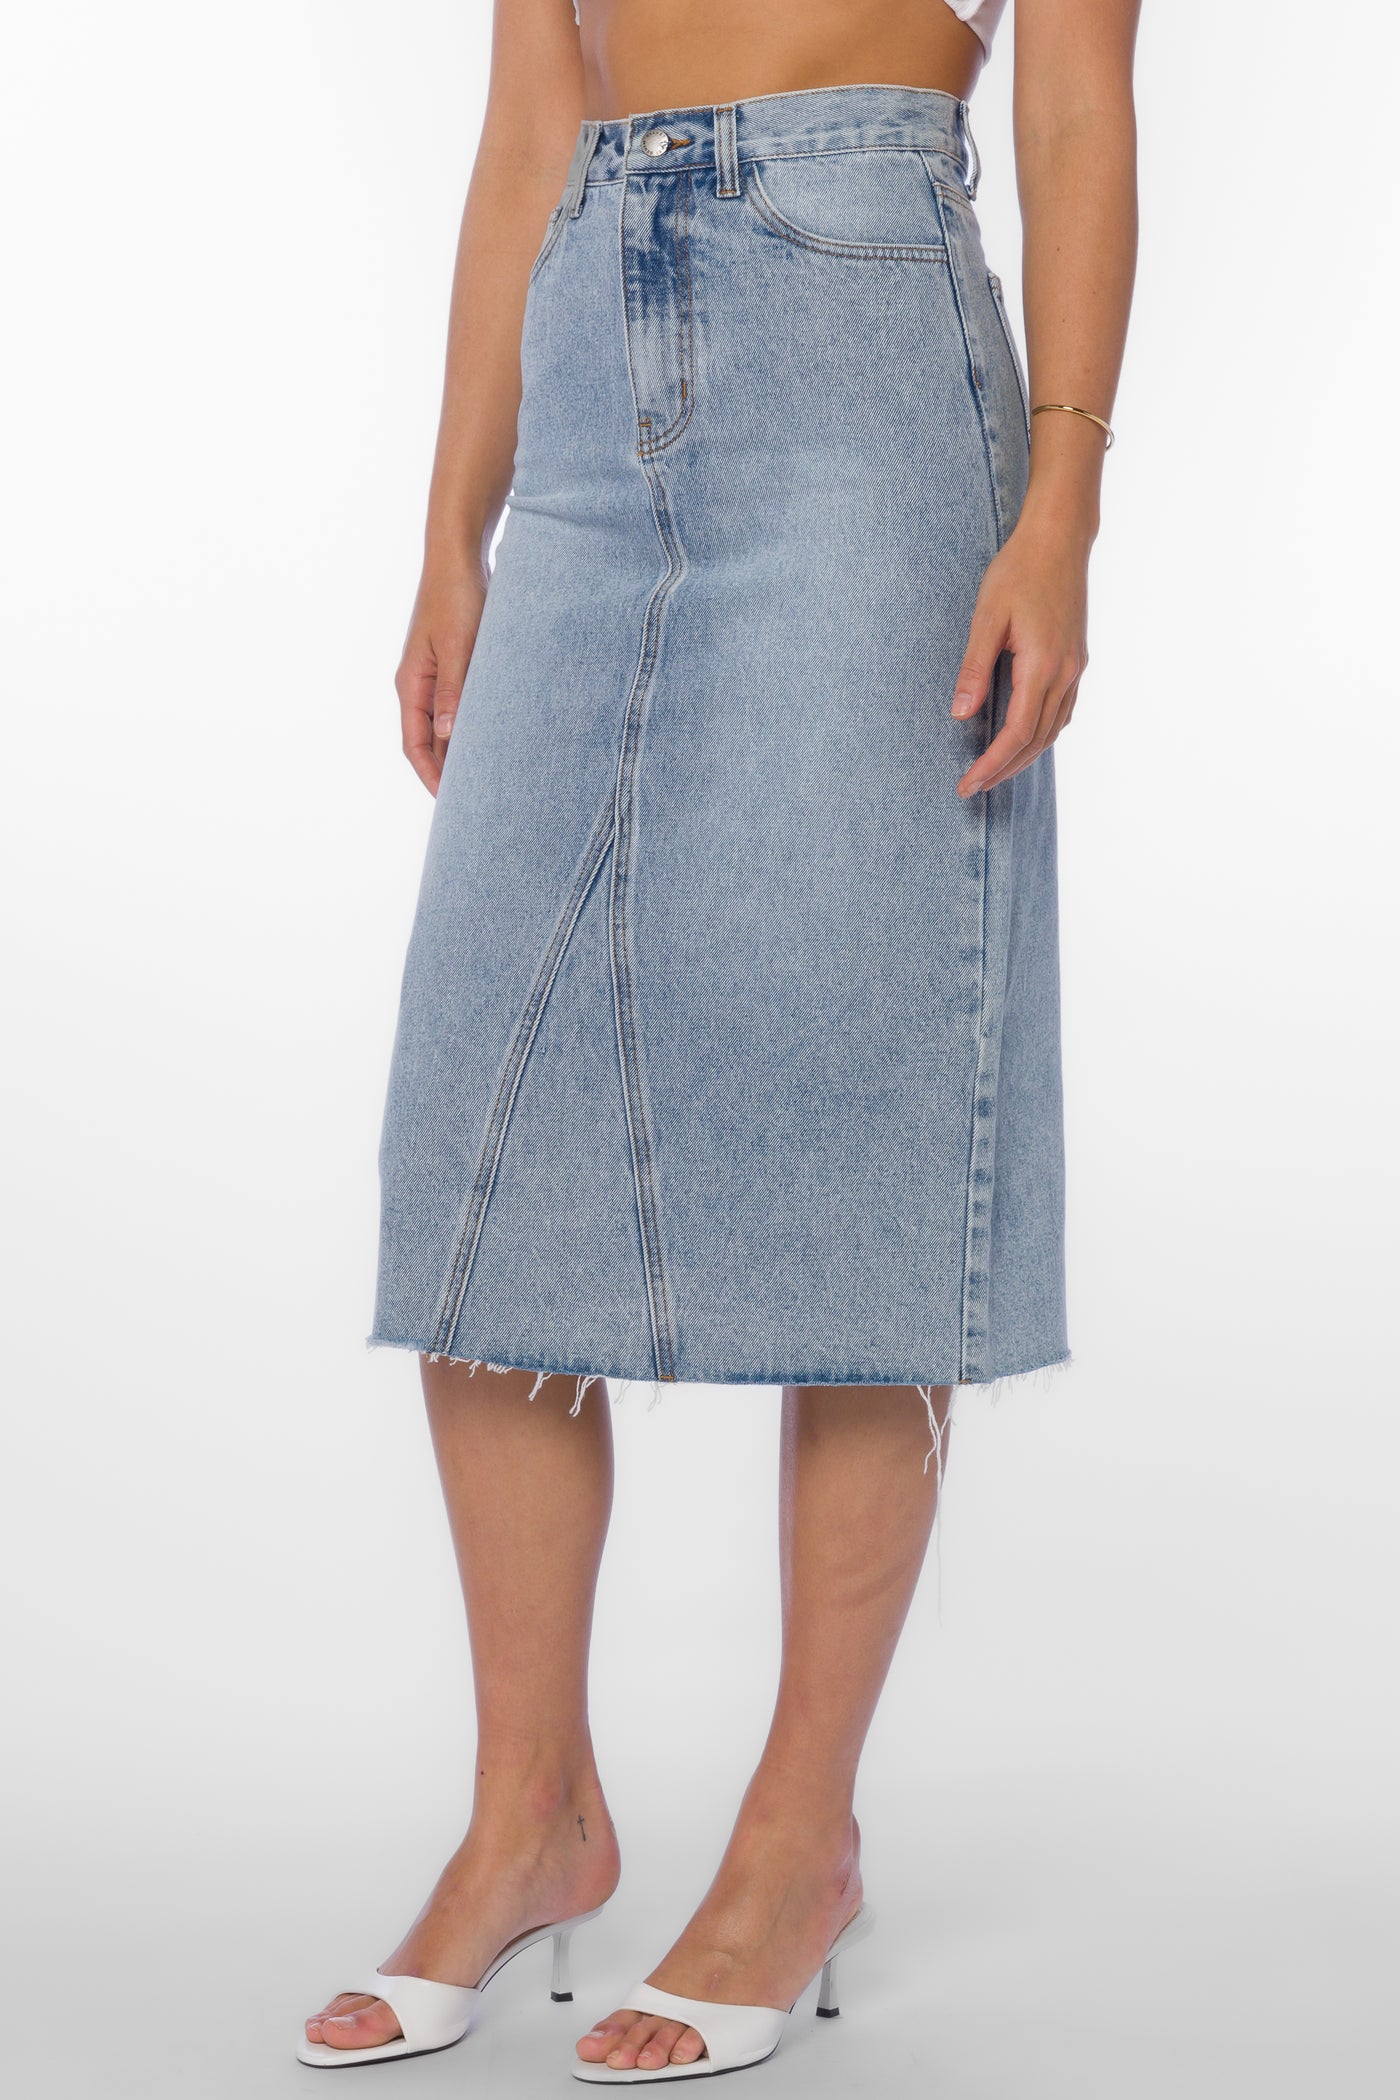 Danica Light Vintage Blue Skirt - Bottoms - Velvet Heart Clothing